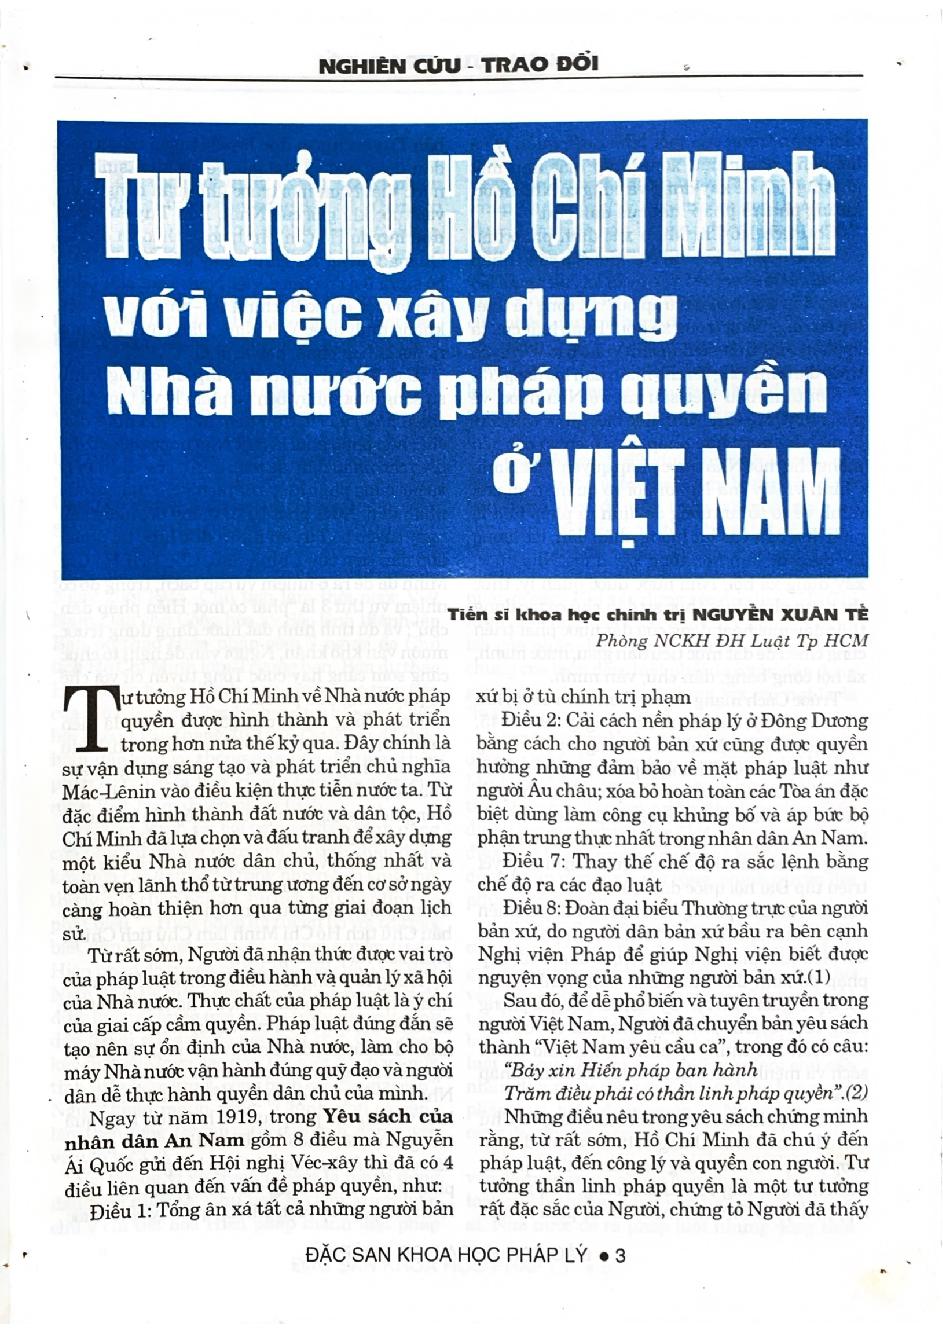 Tư tưởng Hồ Chí Minh với việc xây dựng nhà nước pháp quyền ở Việt Nam